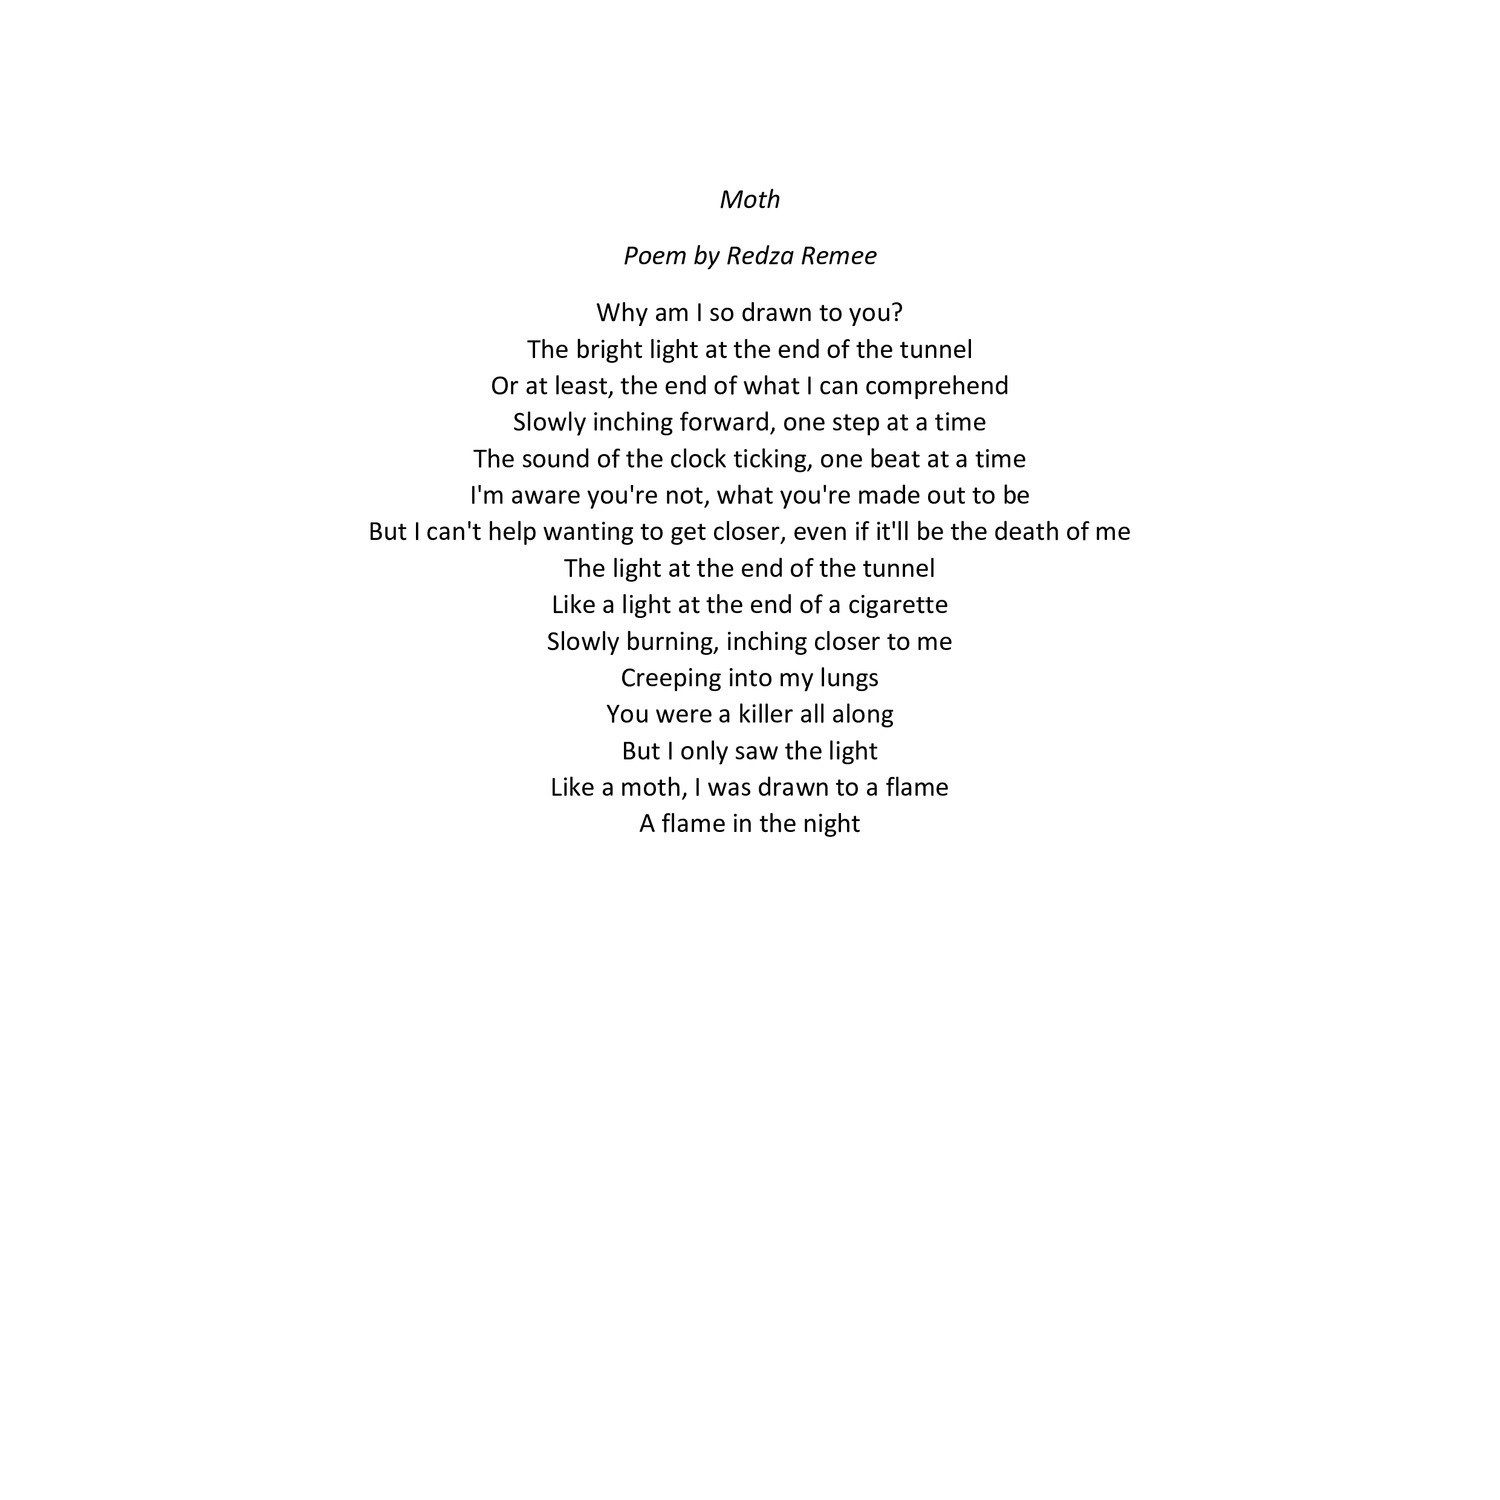 moth - poem.docx | DocDroid